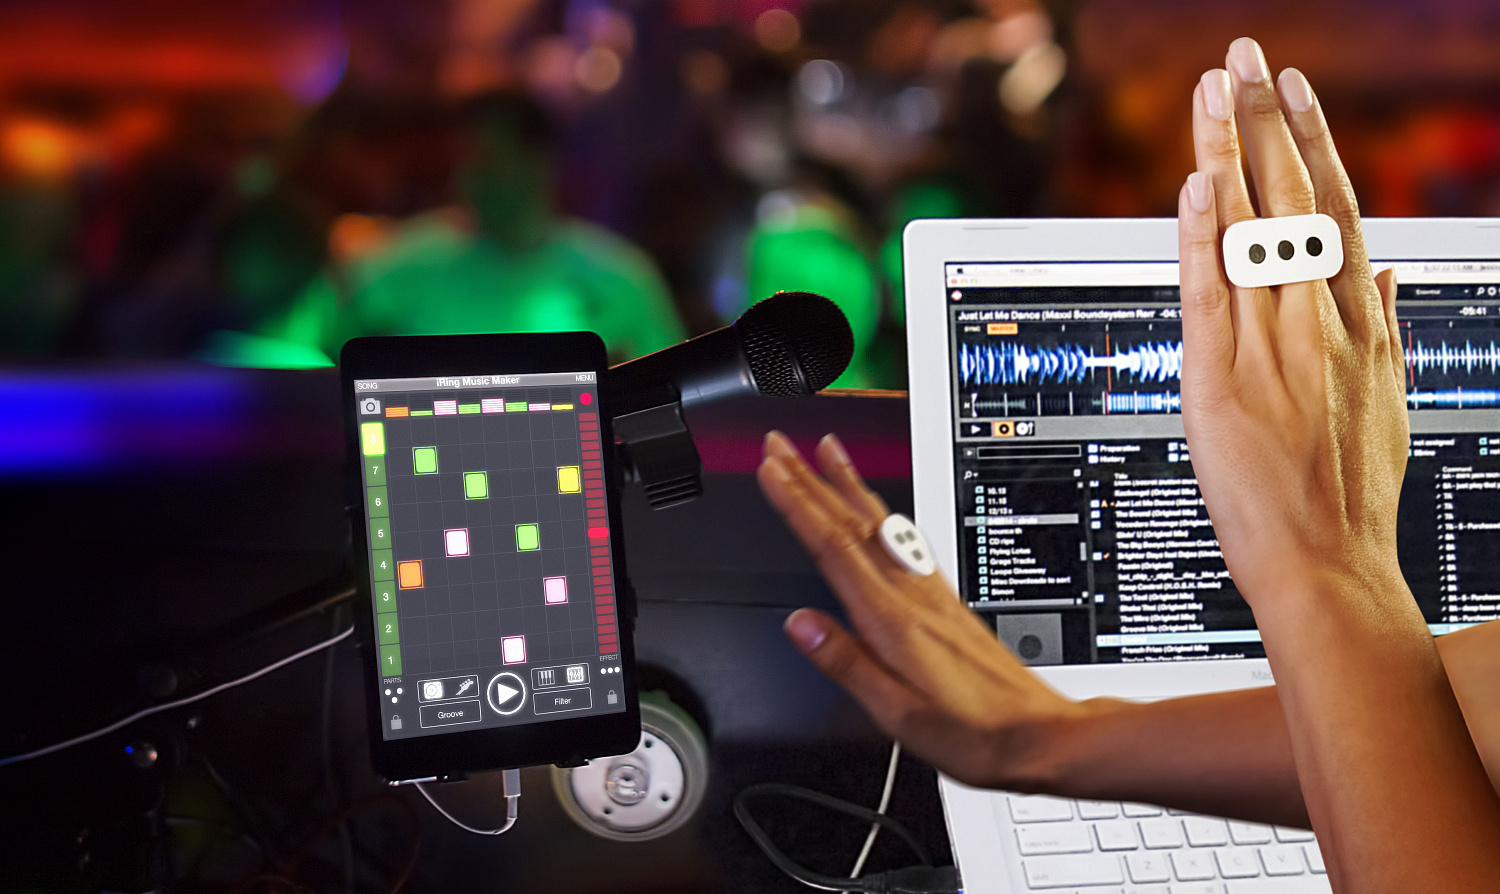 Производитель музыкальных устройств и аксессуаров для iOS и Android -  IK Multimedia и его жестовые контроллеры iRing. 